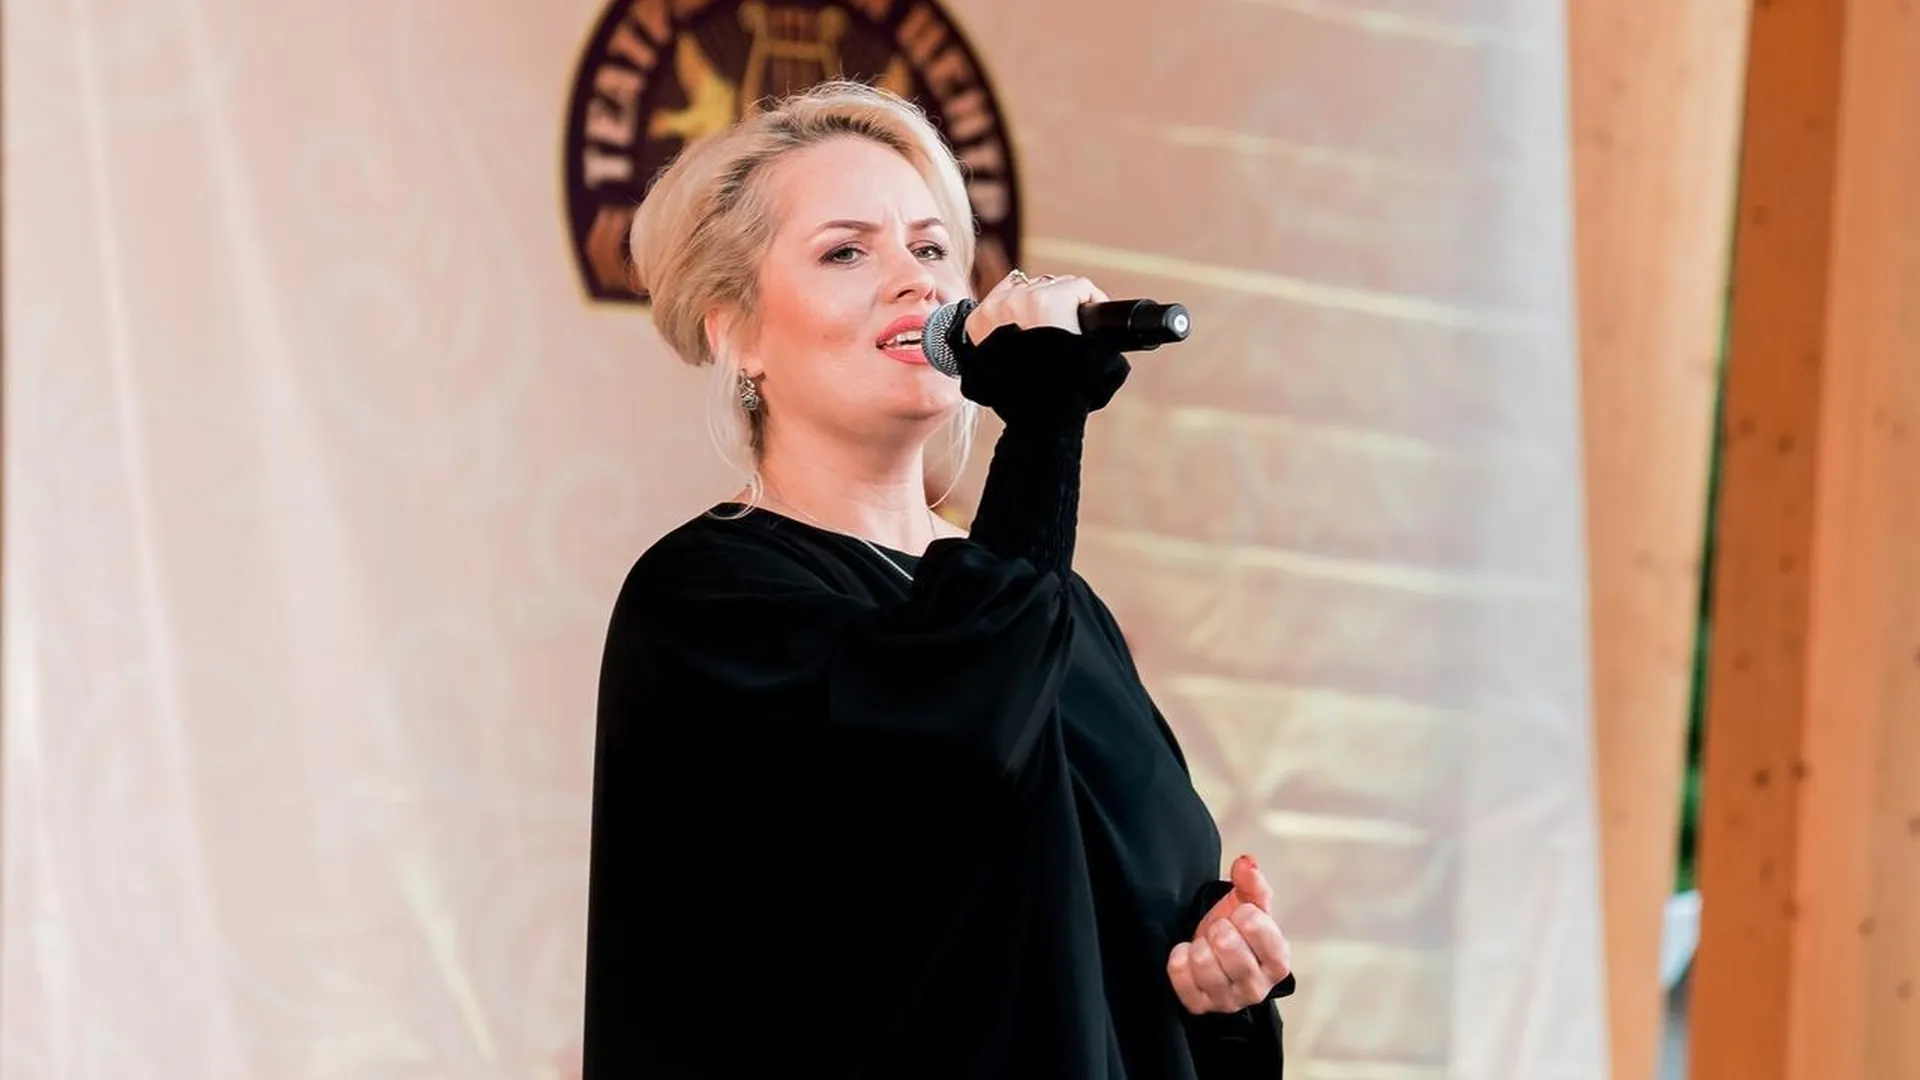 Жители Подмосковья могут поддержать представительницу региона на конкурсе вокала